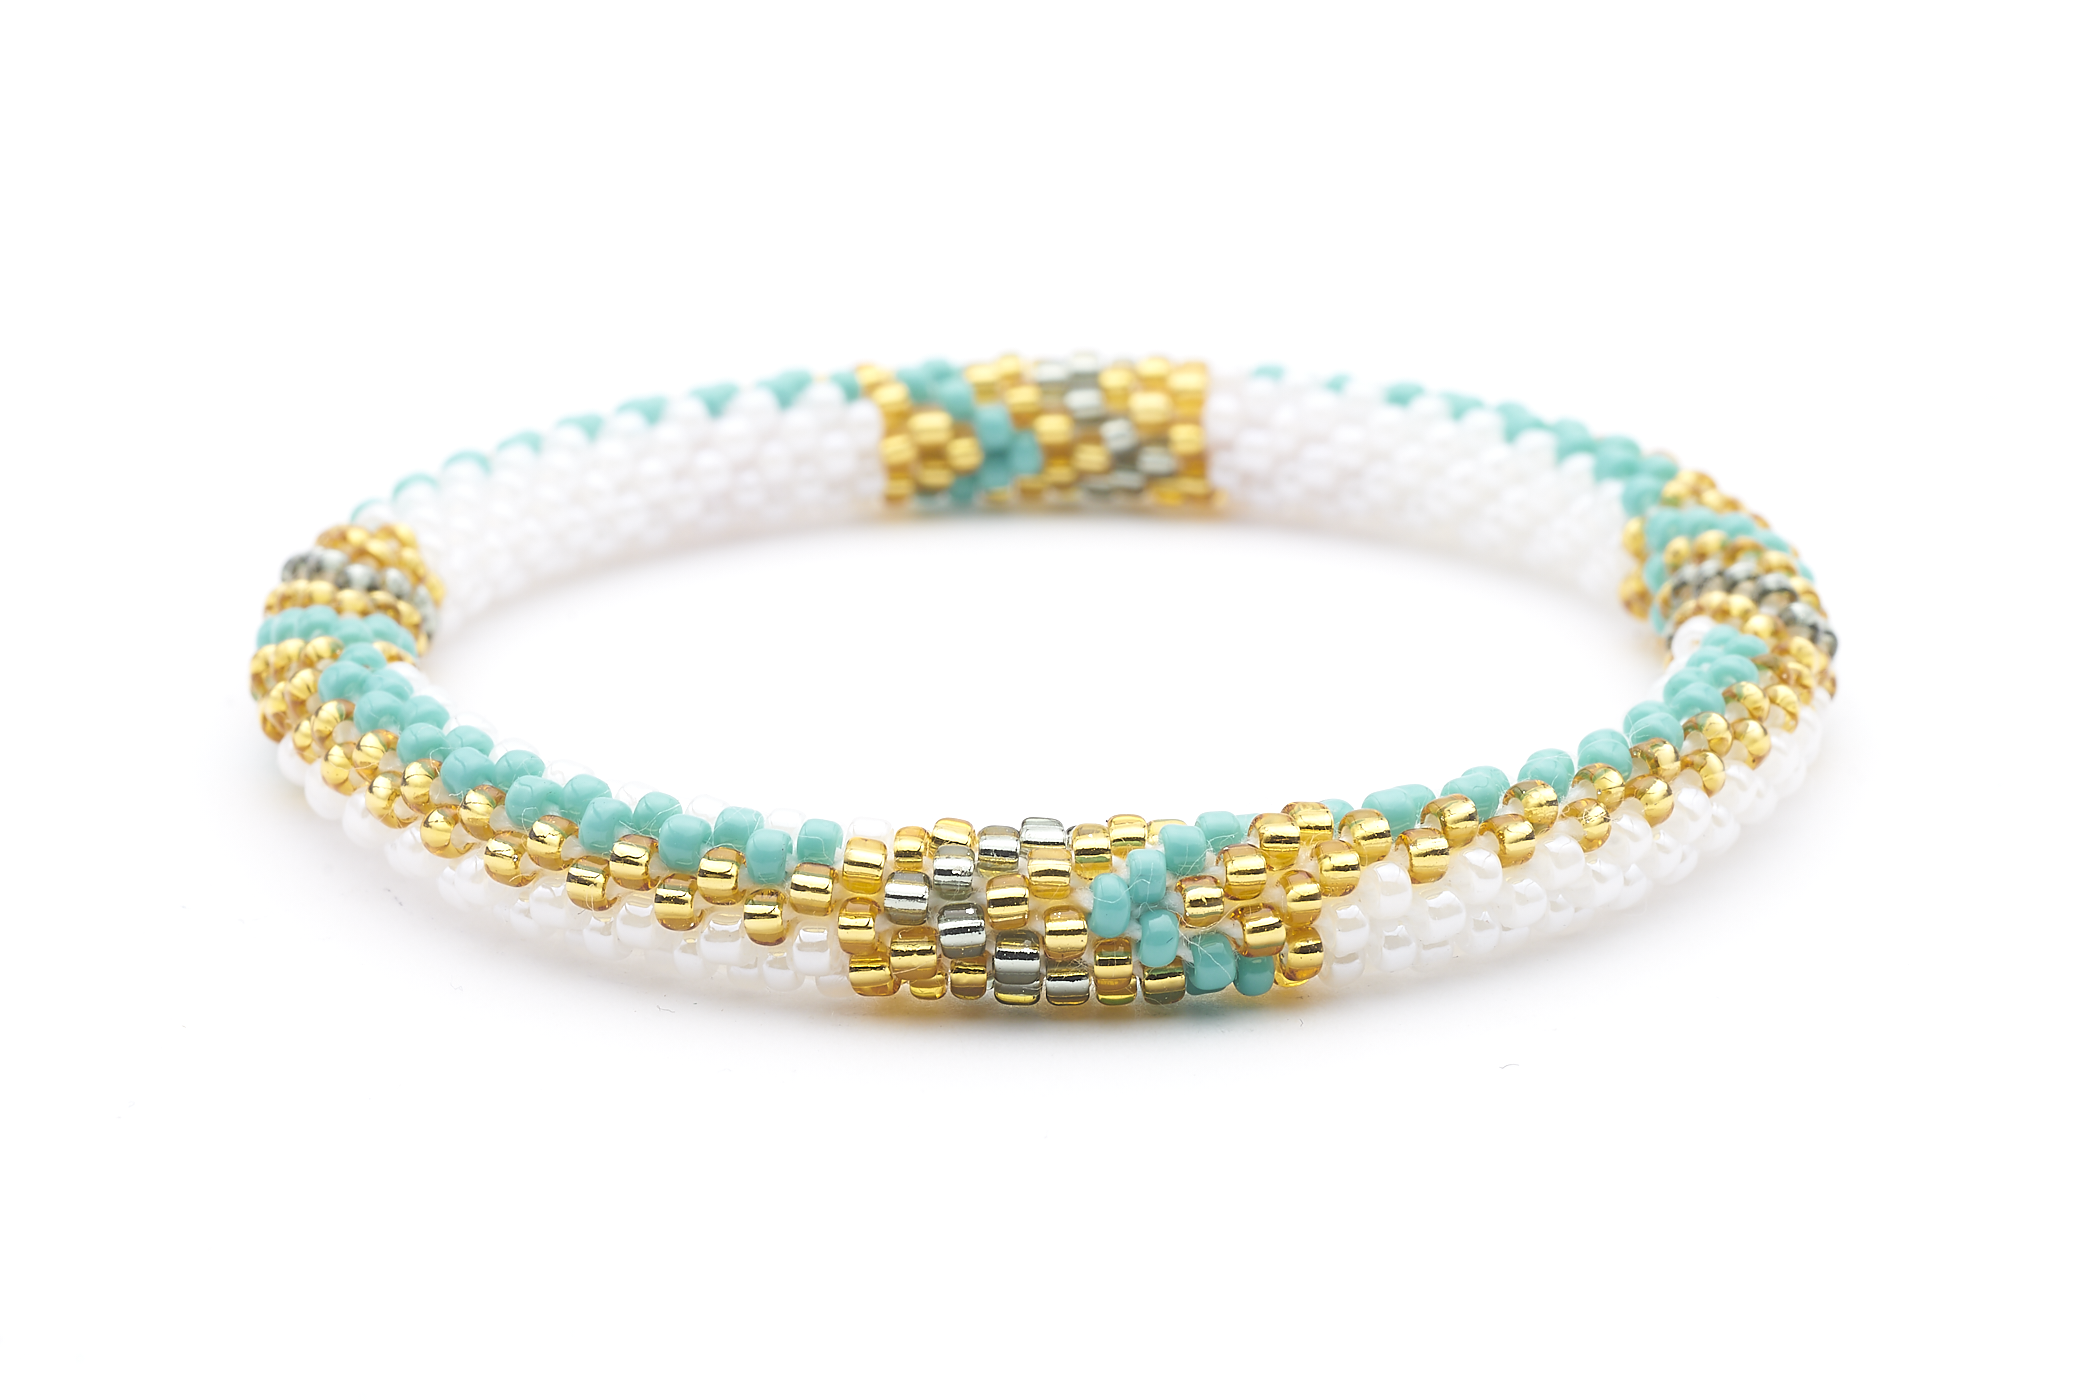 Sashka Co. Extended 8" Bracelet Turquoise / White / Gold Warrior Bracelet - Extended 8"